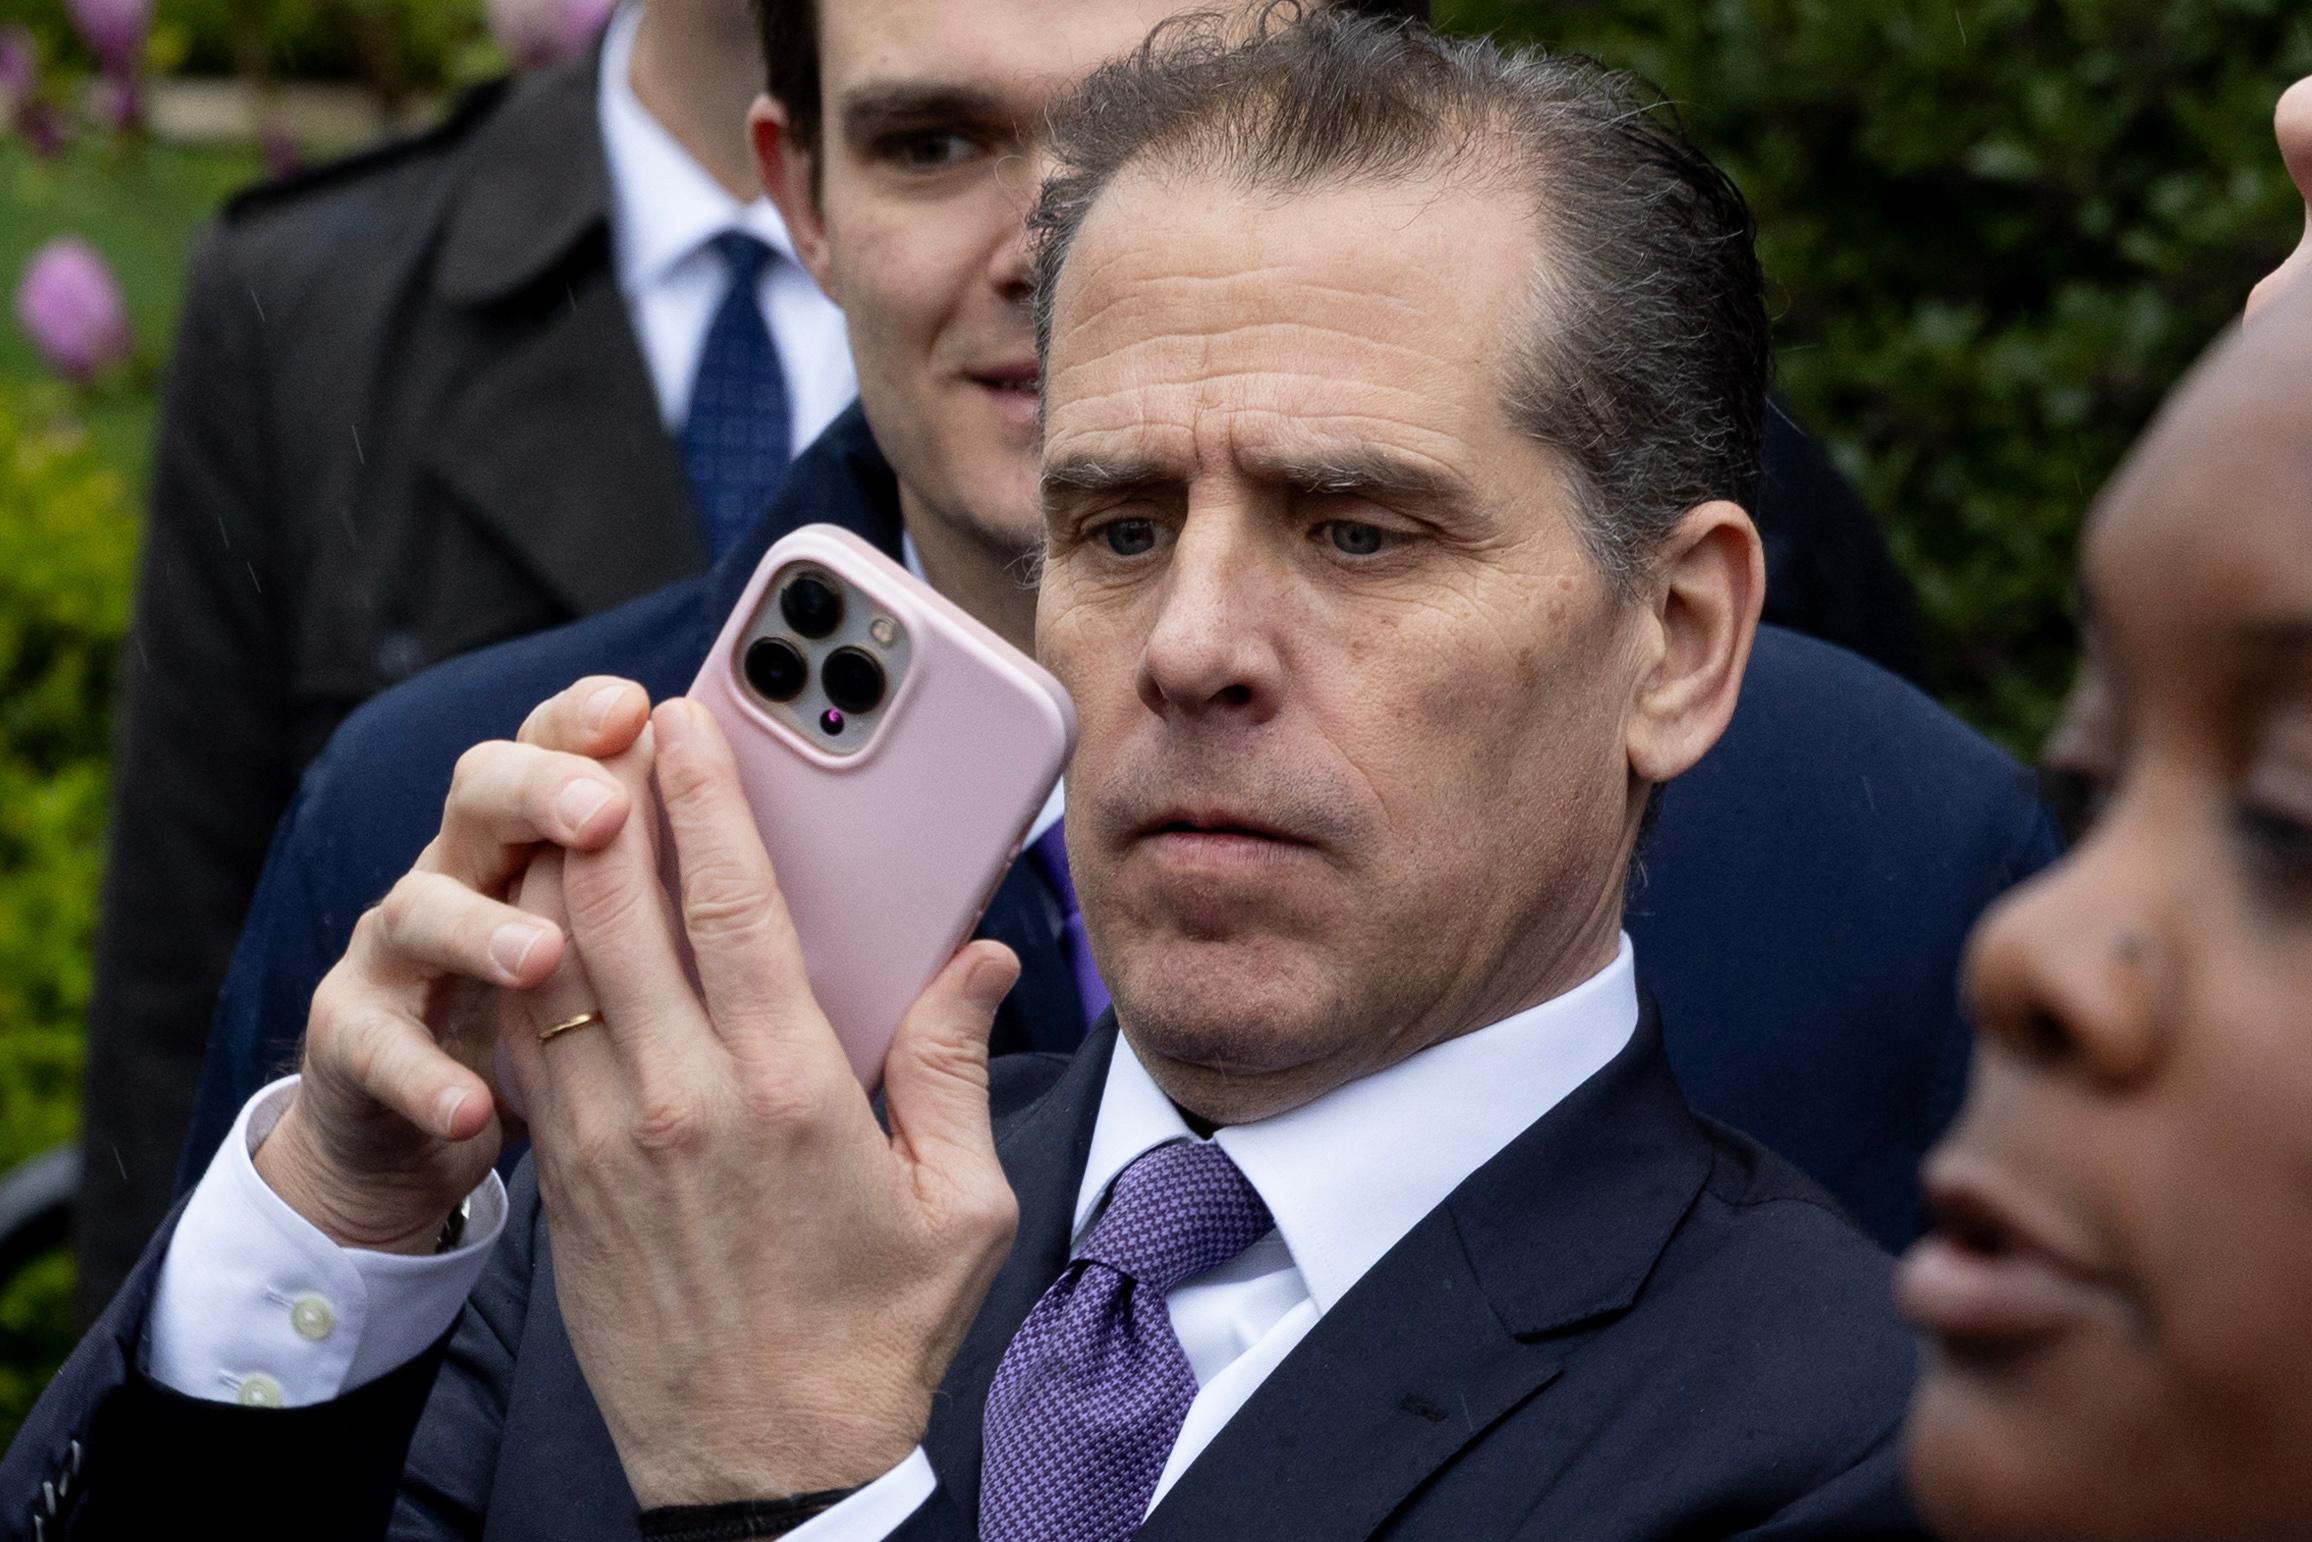 Hunter Biden holding a cell phone